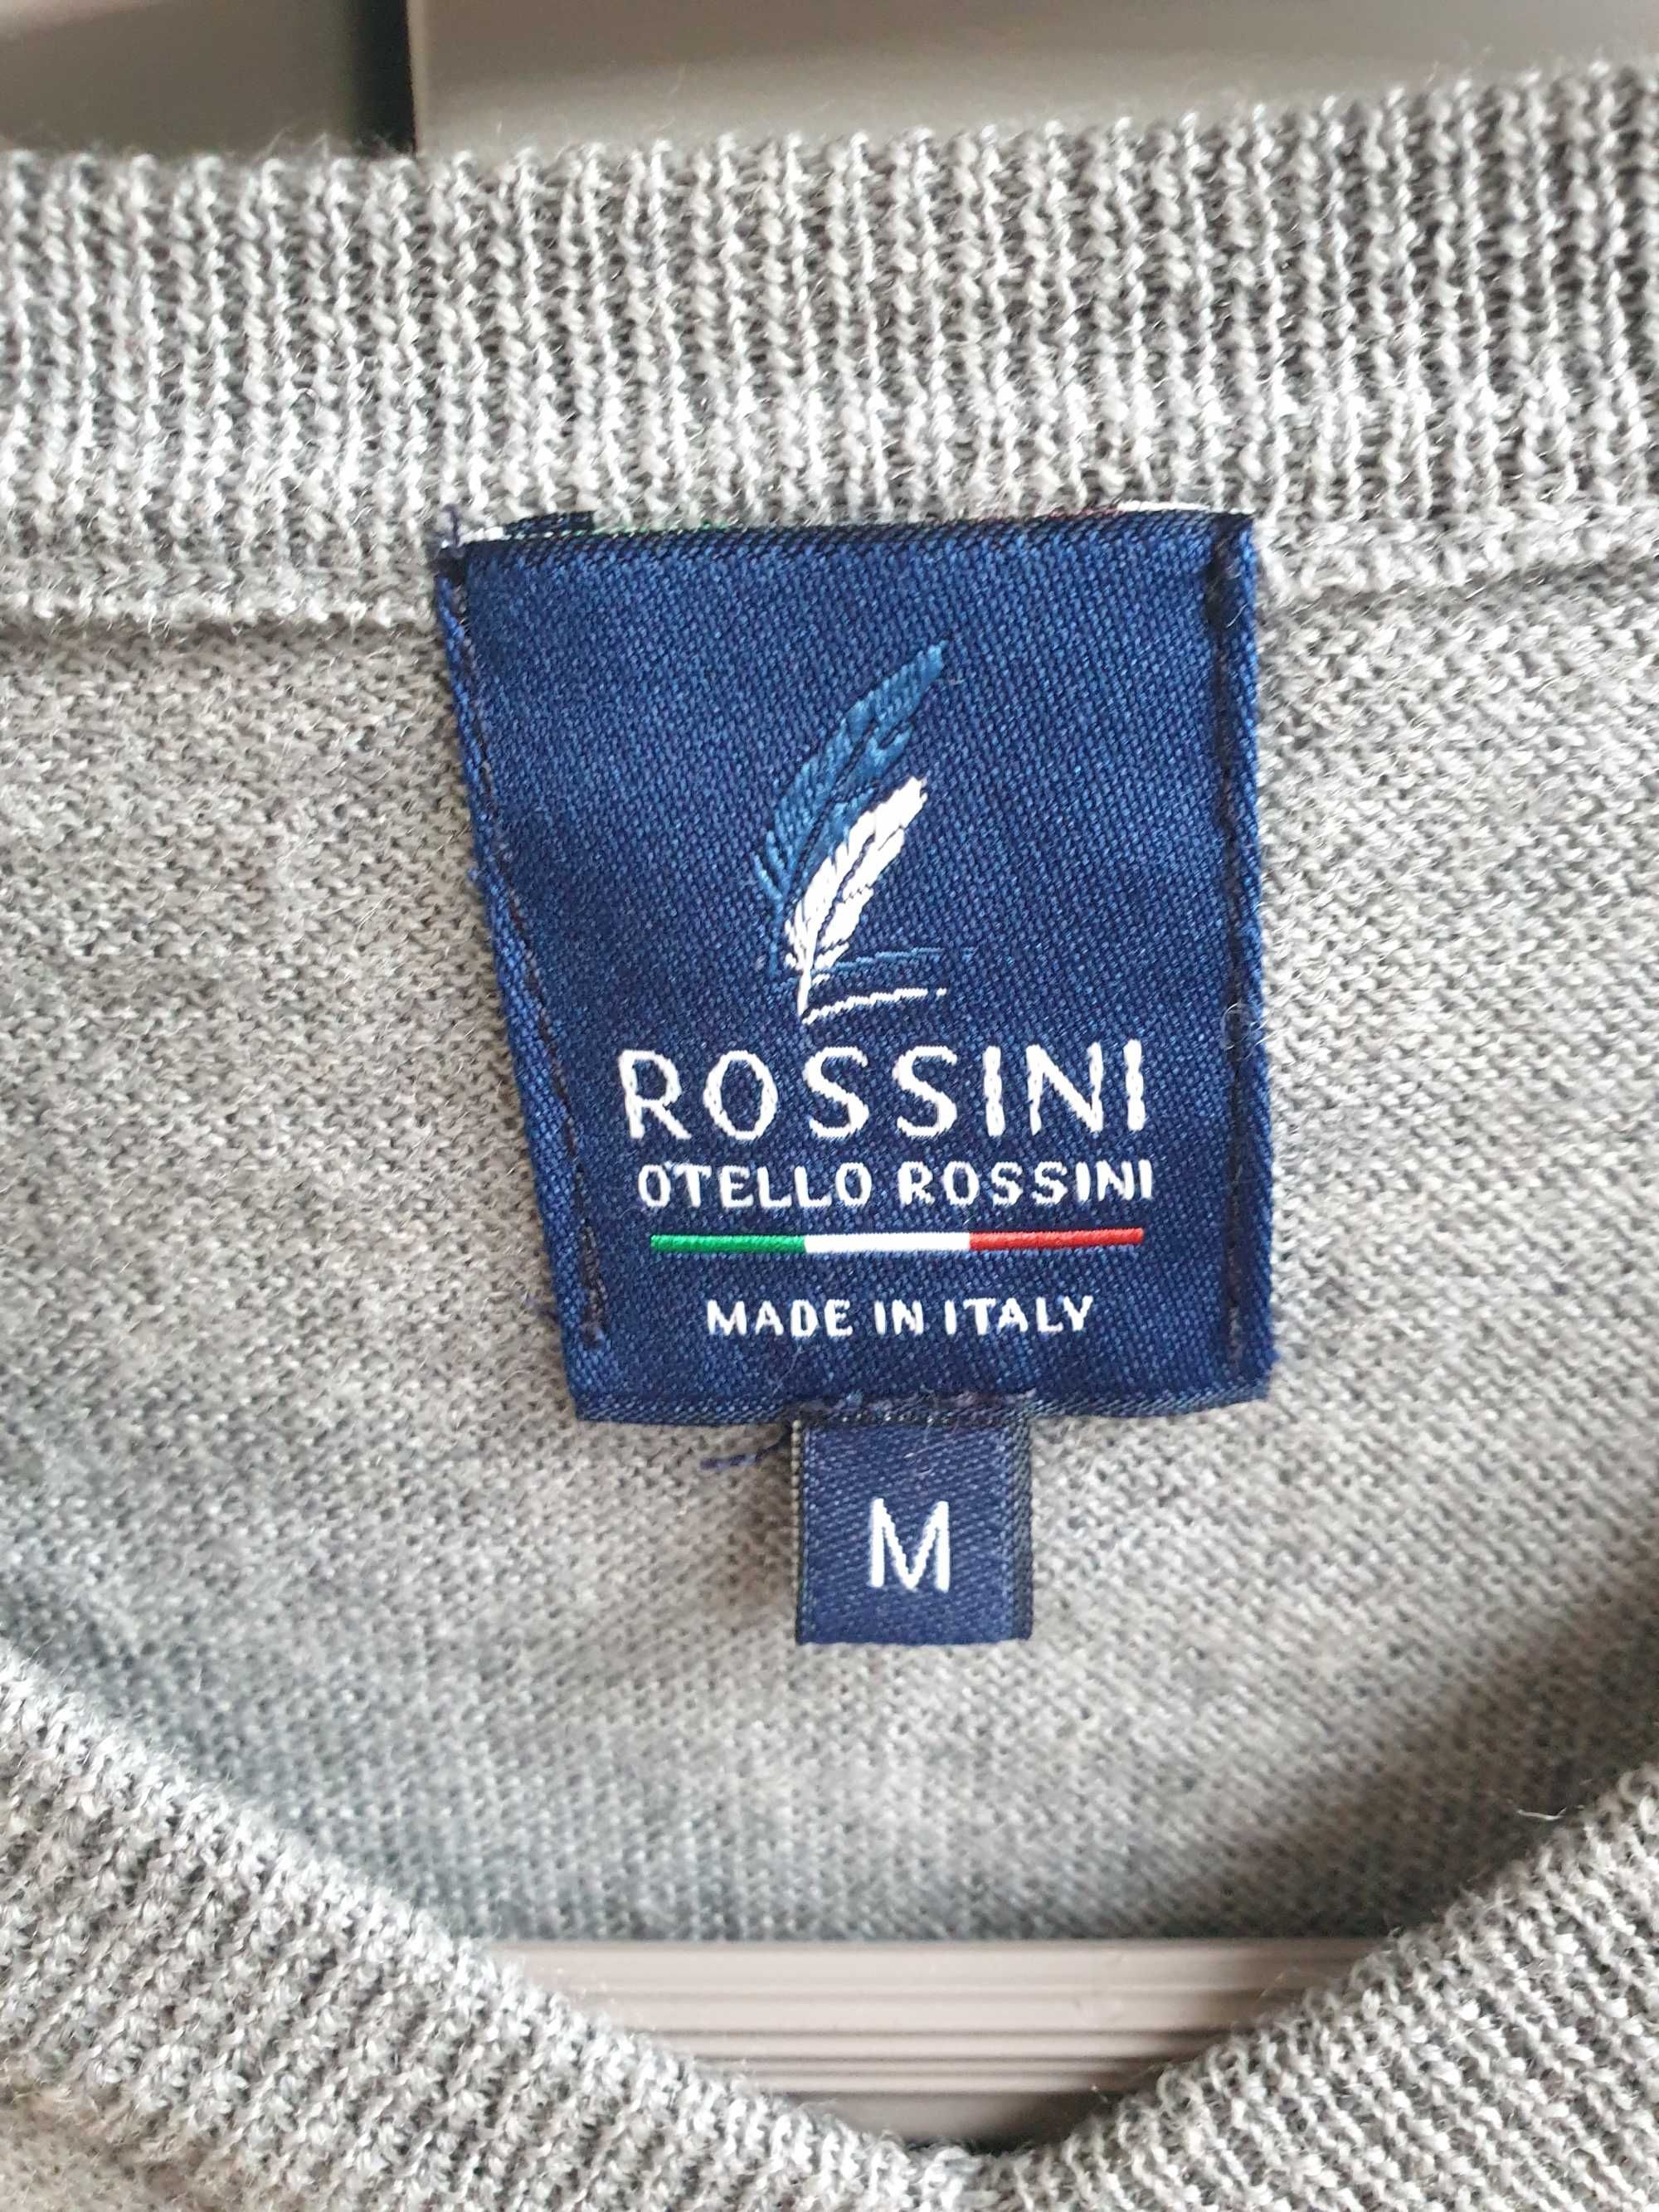 Szary wełniany sweter M męski damski M 38 Rossini włoski